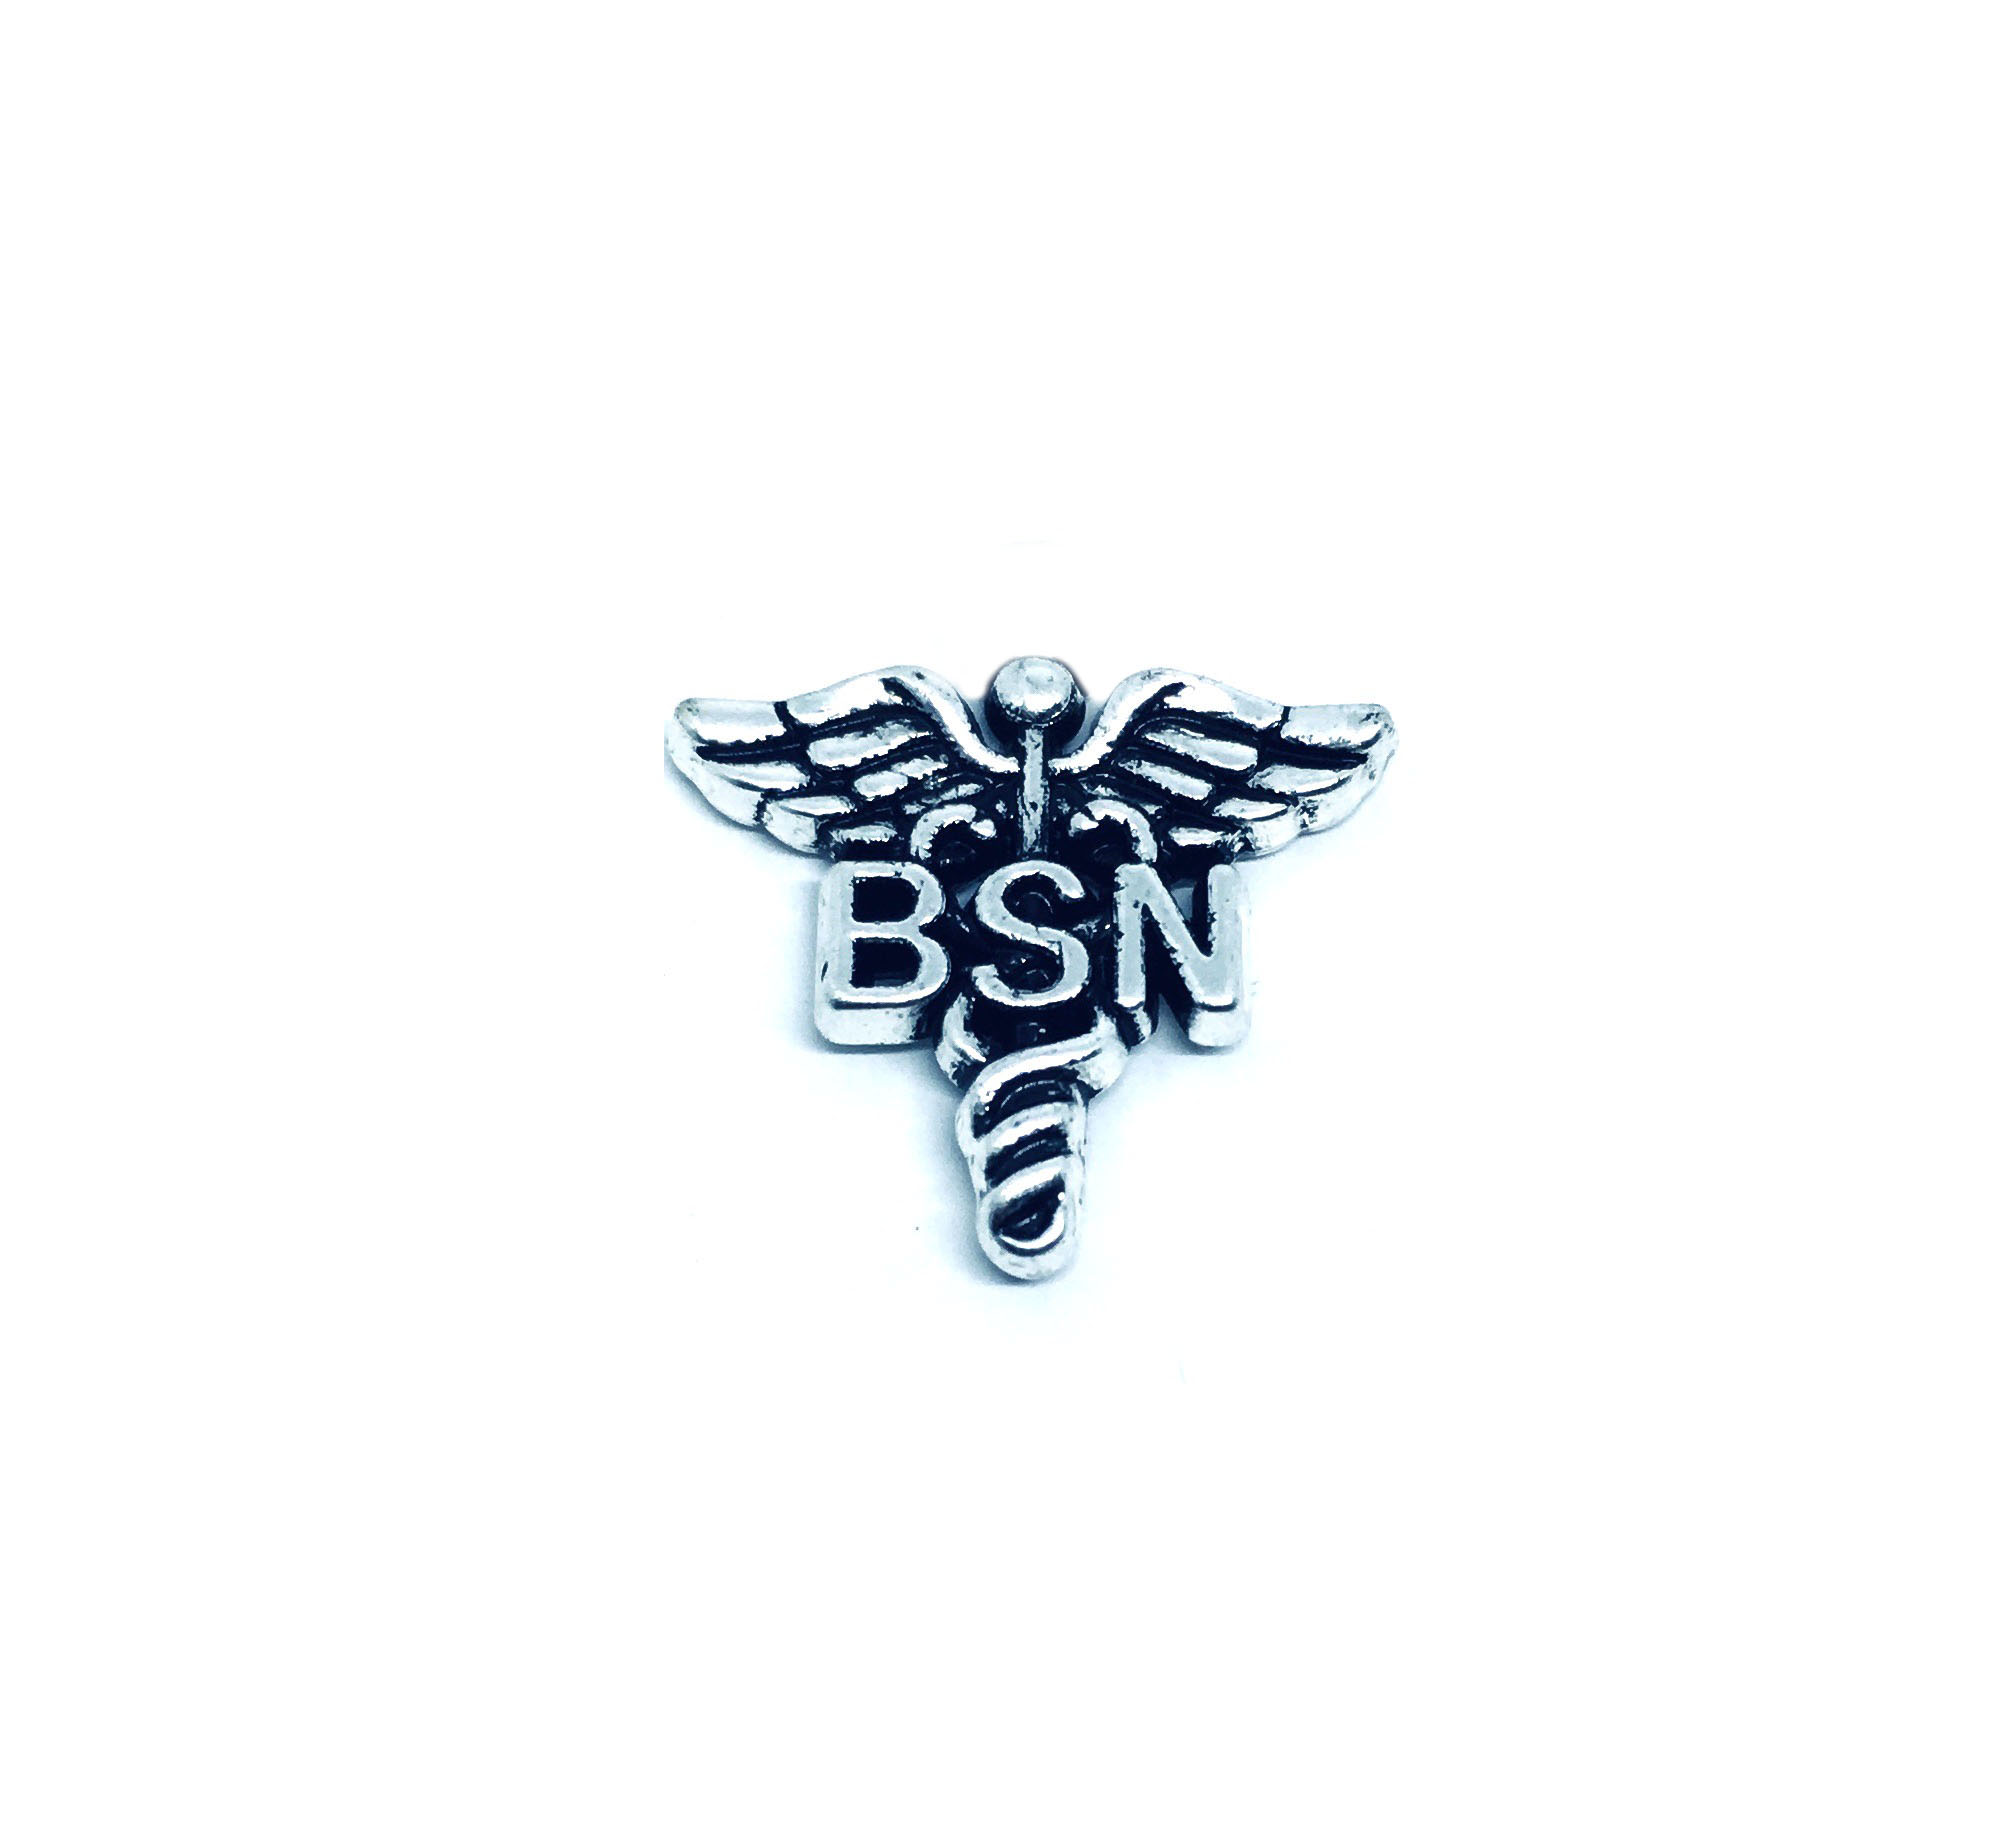 Pewter BSN Medical Pin